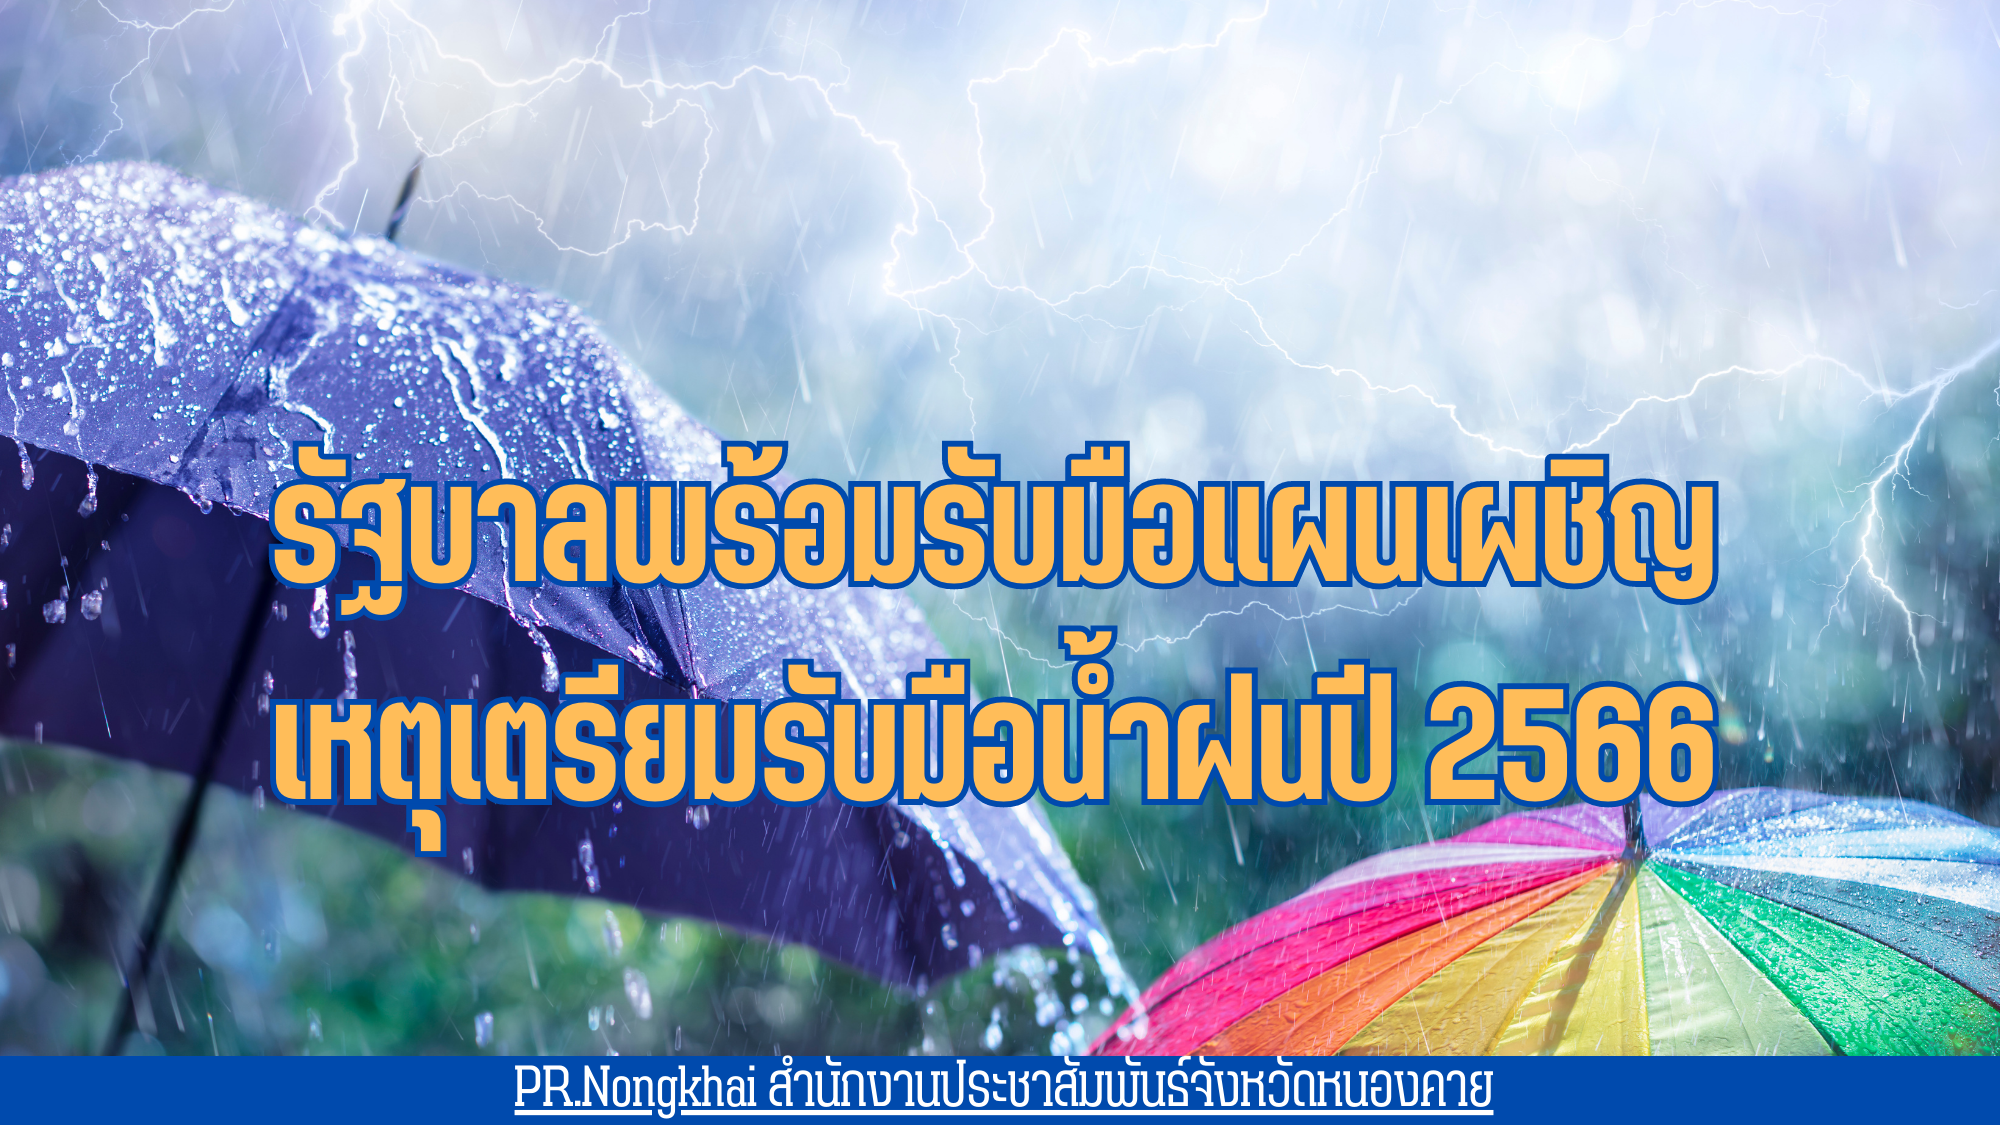 รัฐบาลพร้อมรับมือแผนเผชิญเหตุเตรียมรับมือน้ำฝนปี 2566 พร้อมเตือนภัย จังหวัดที่ต้องเฝ้าระวัง